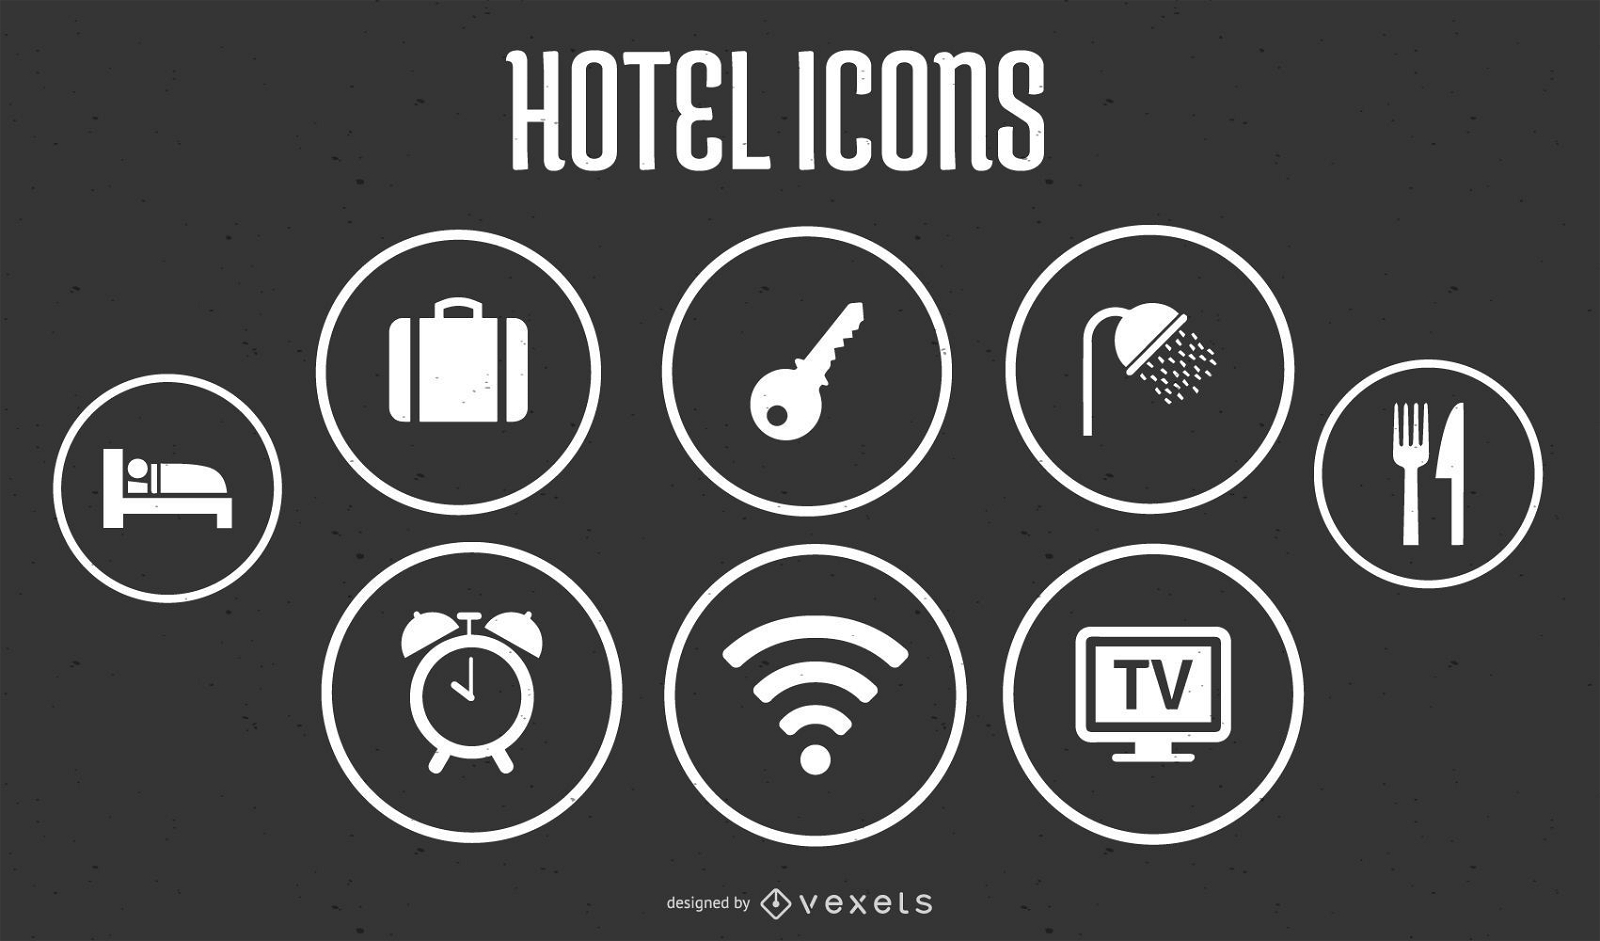 Iconos de hotel en formato vectorial